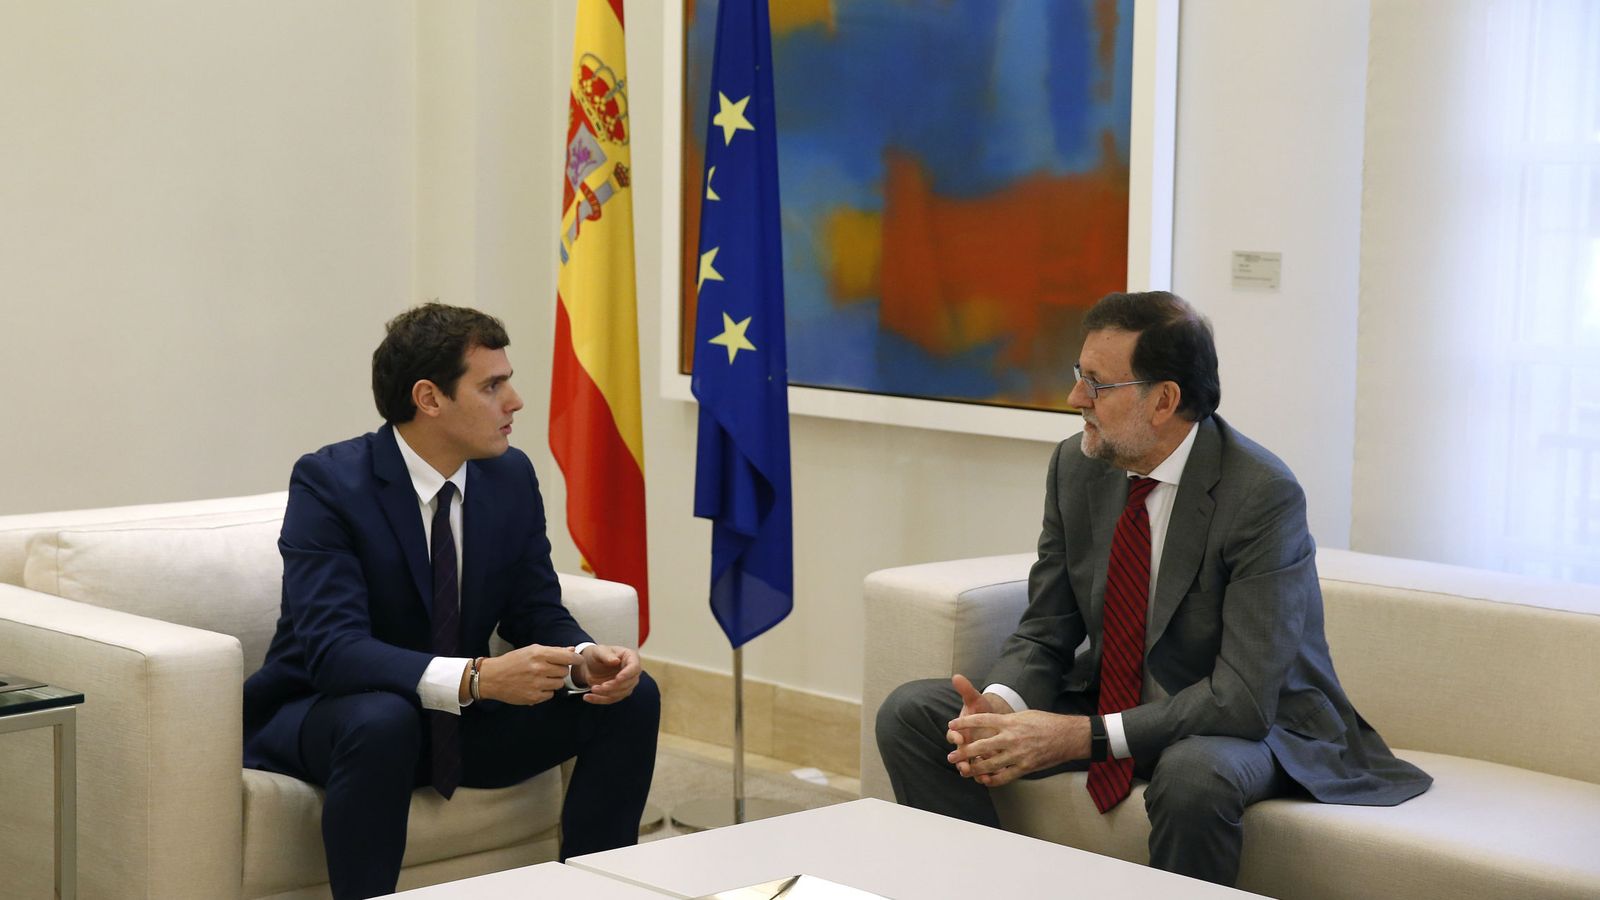 Foto: El presidente del Gobierno español en funciones, Mariano Rajoy, y el presidente de Ciudadanos, Albert Rivera, durante la reunión que mantuvieron en diciembre de 2015. (EFE)